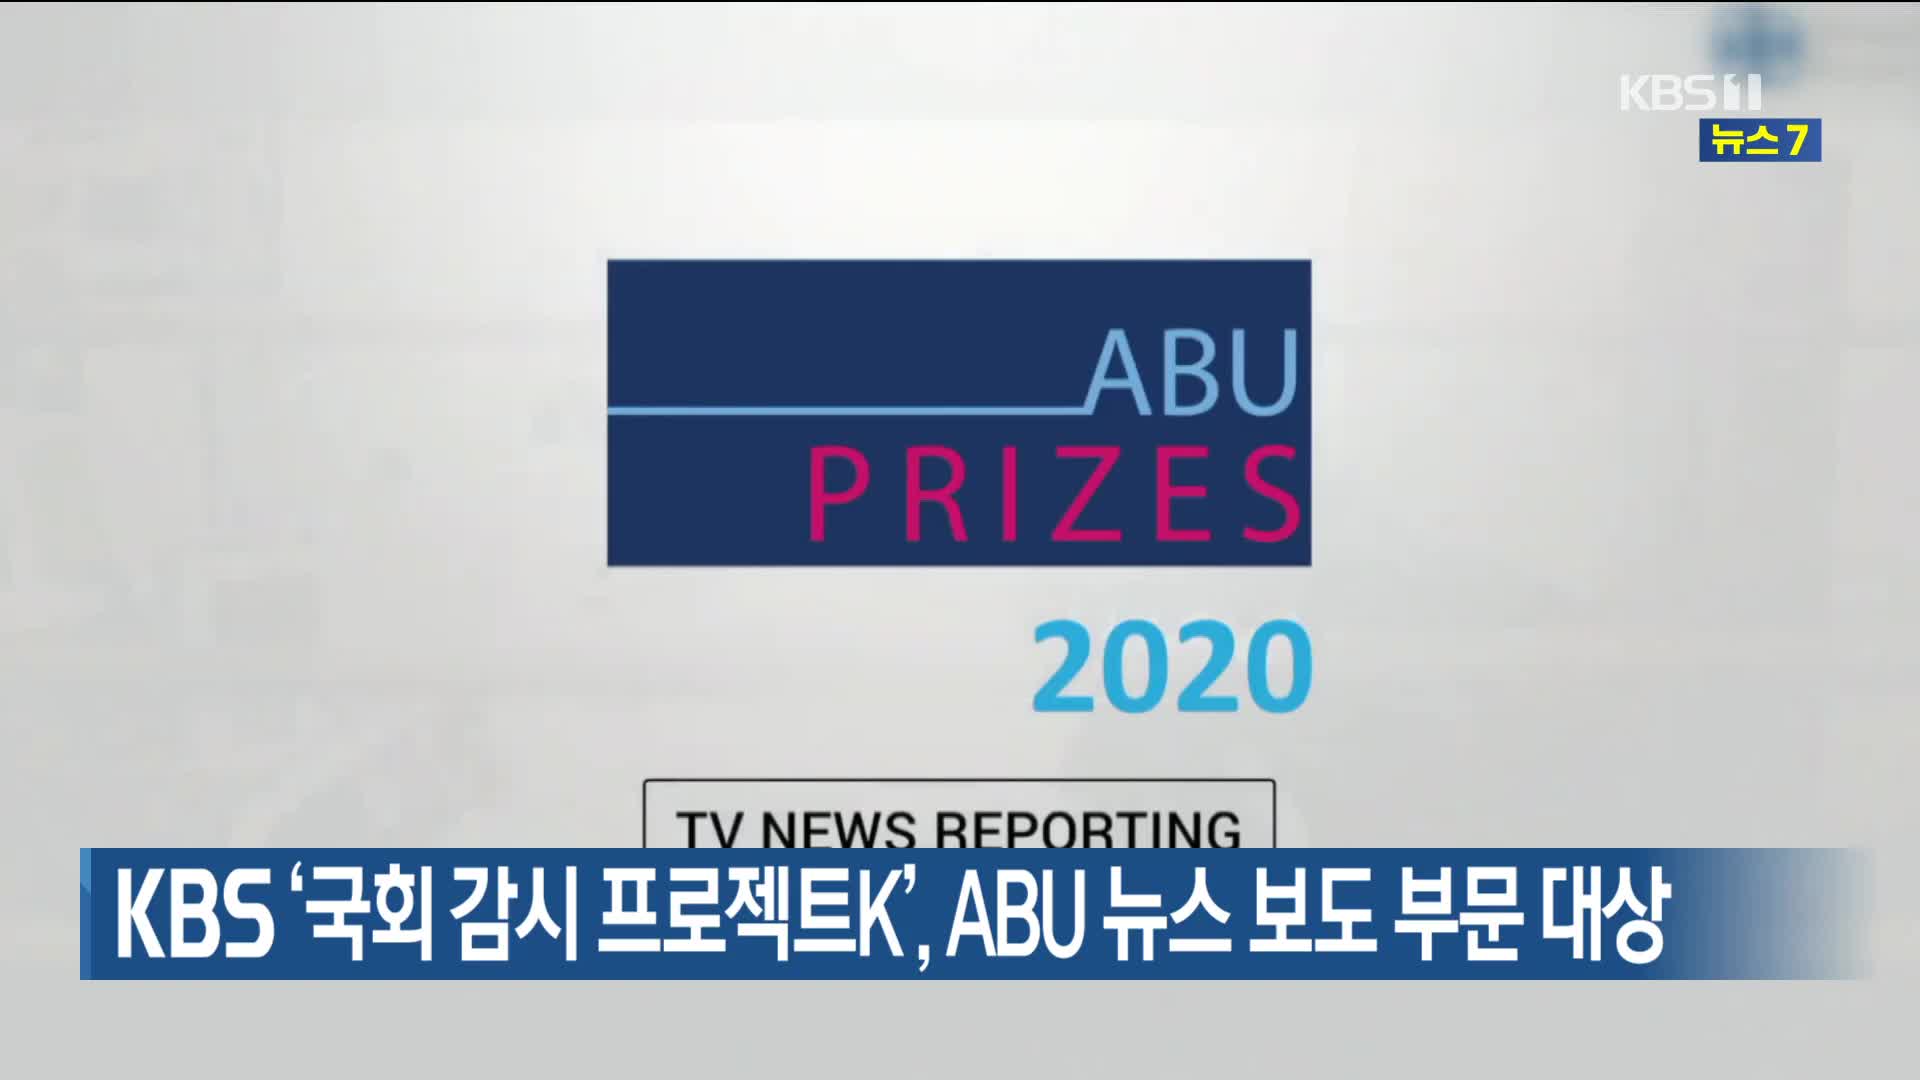 KBS ‘국회 감시 프로젝트K’, ABU 뉴스 보도 부문 대상